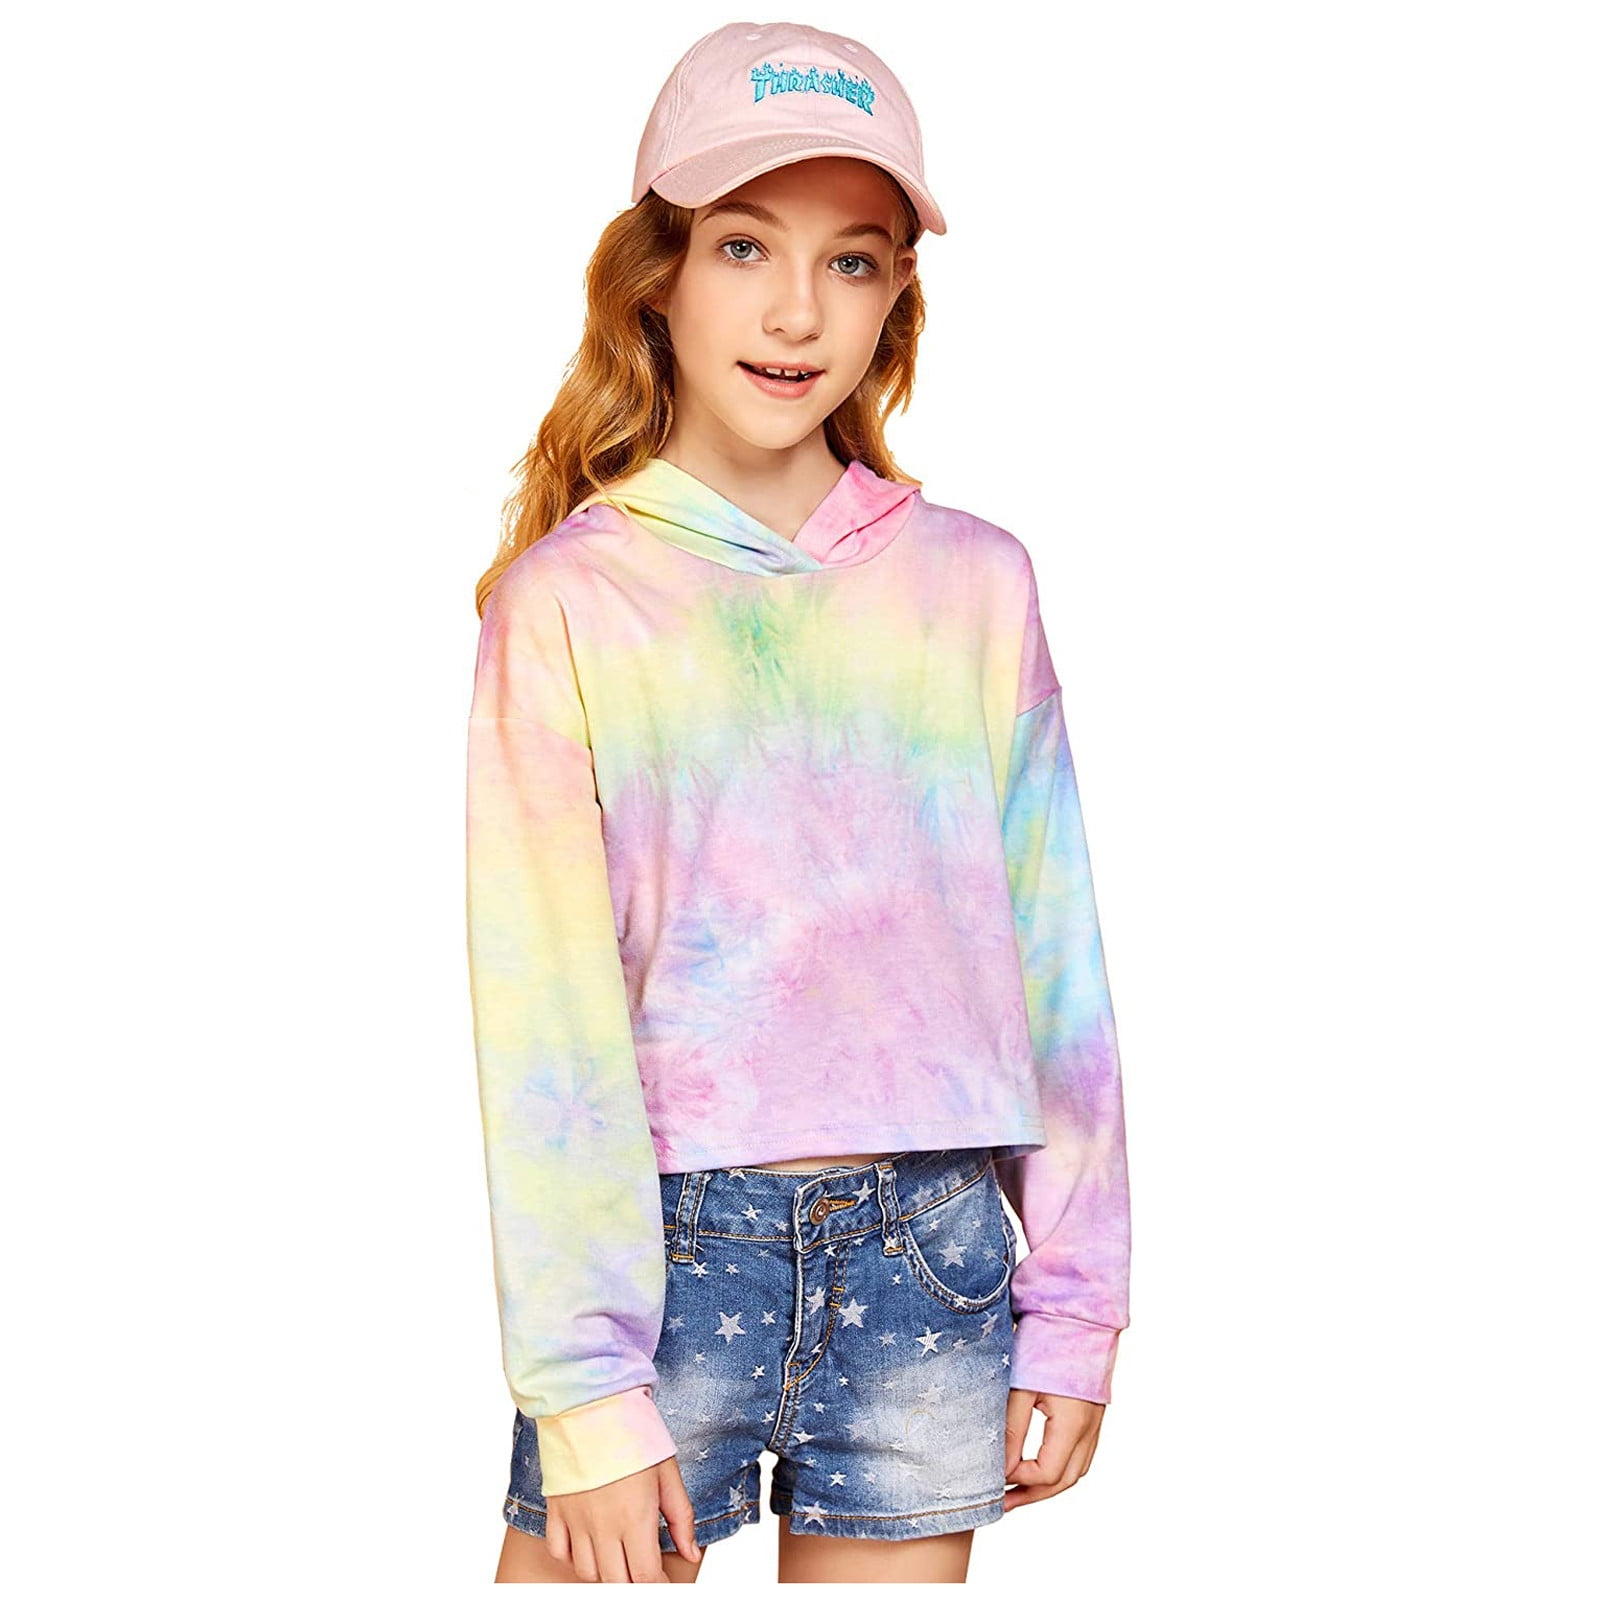 Kids Sweatshirts Teen Girls Crop Tops Tie-Dye Fashion Hoodies Blouses Pullover Tops